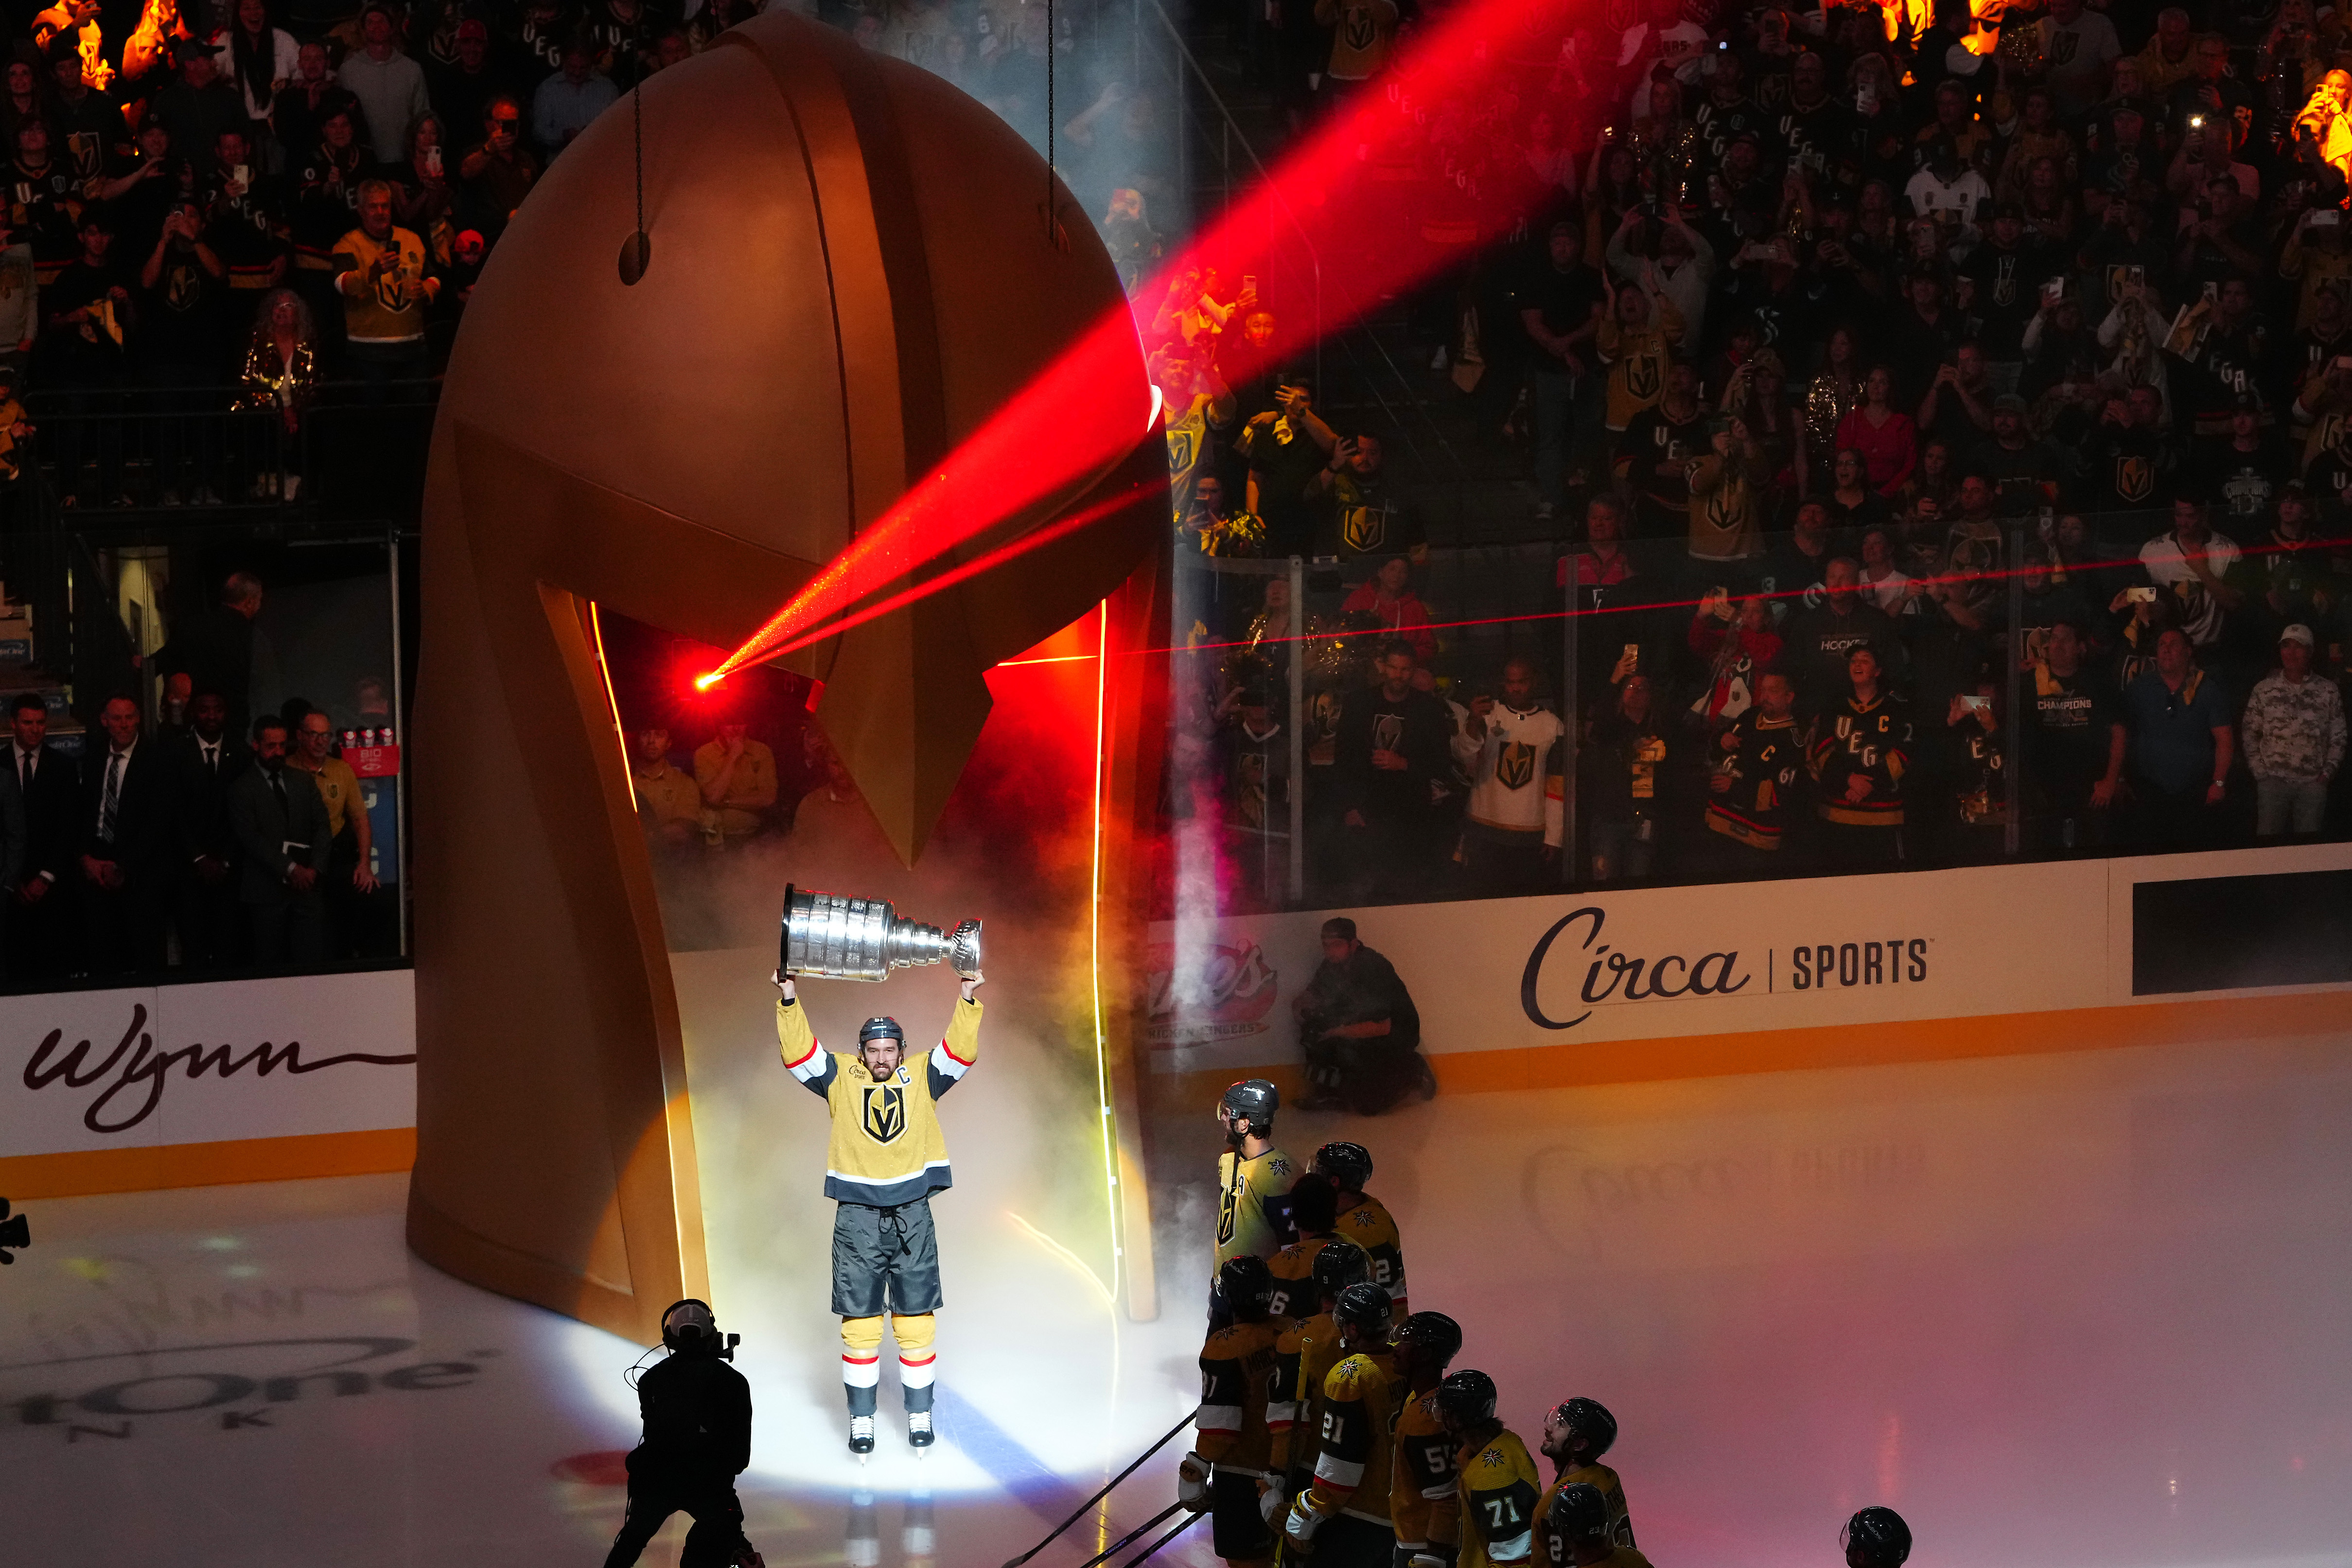 Golden Knights raise Stanley Cup banner, beat Kraken 4-1 in opener